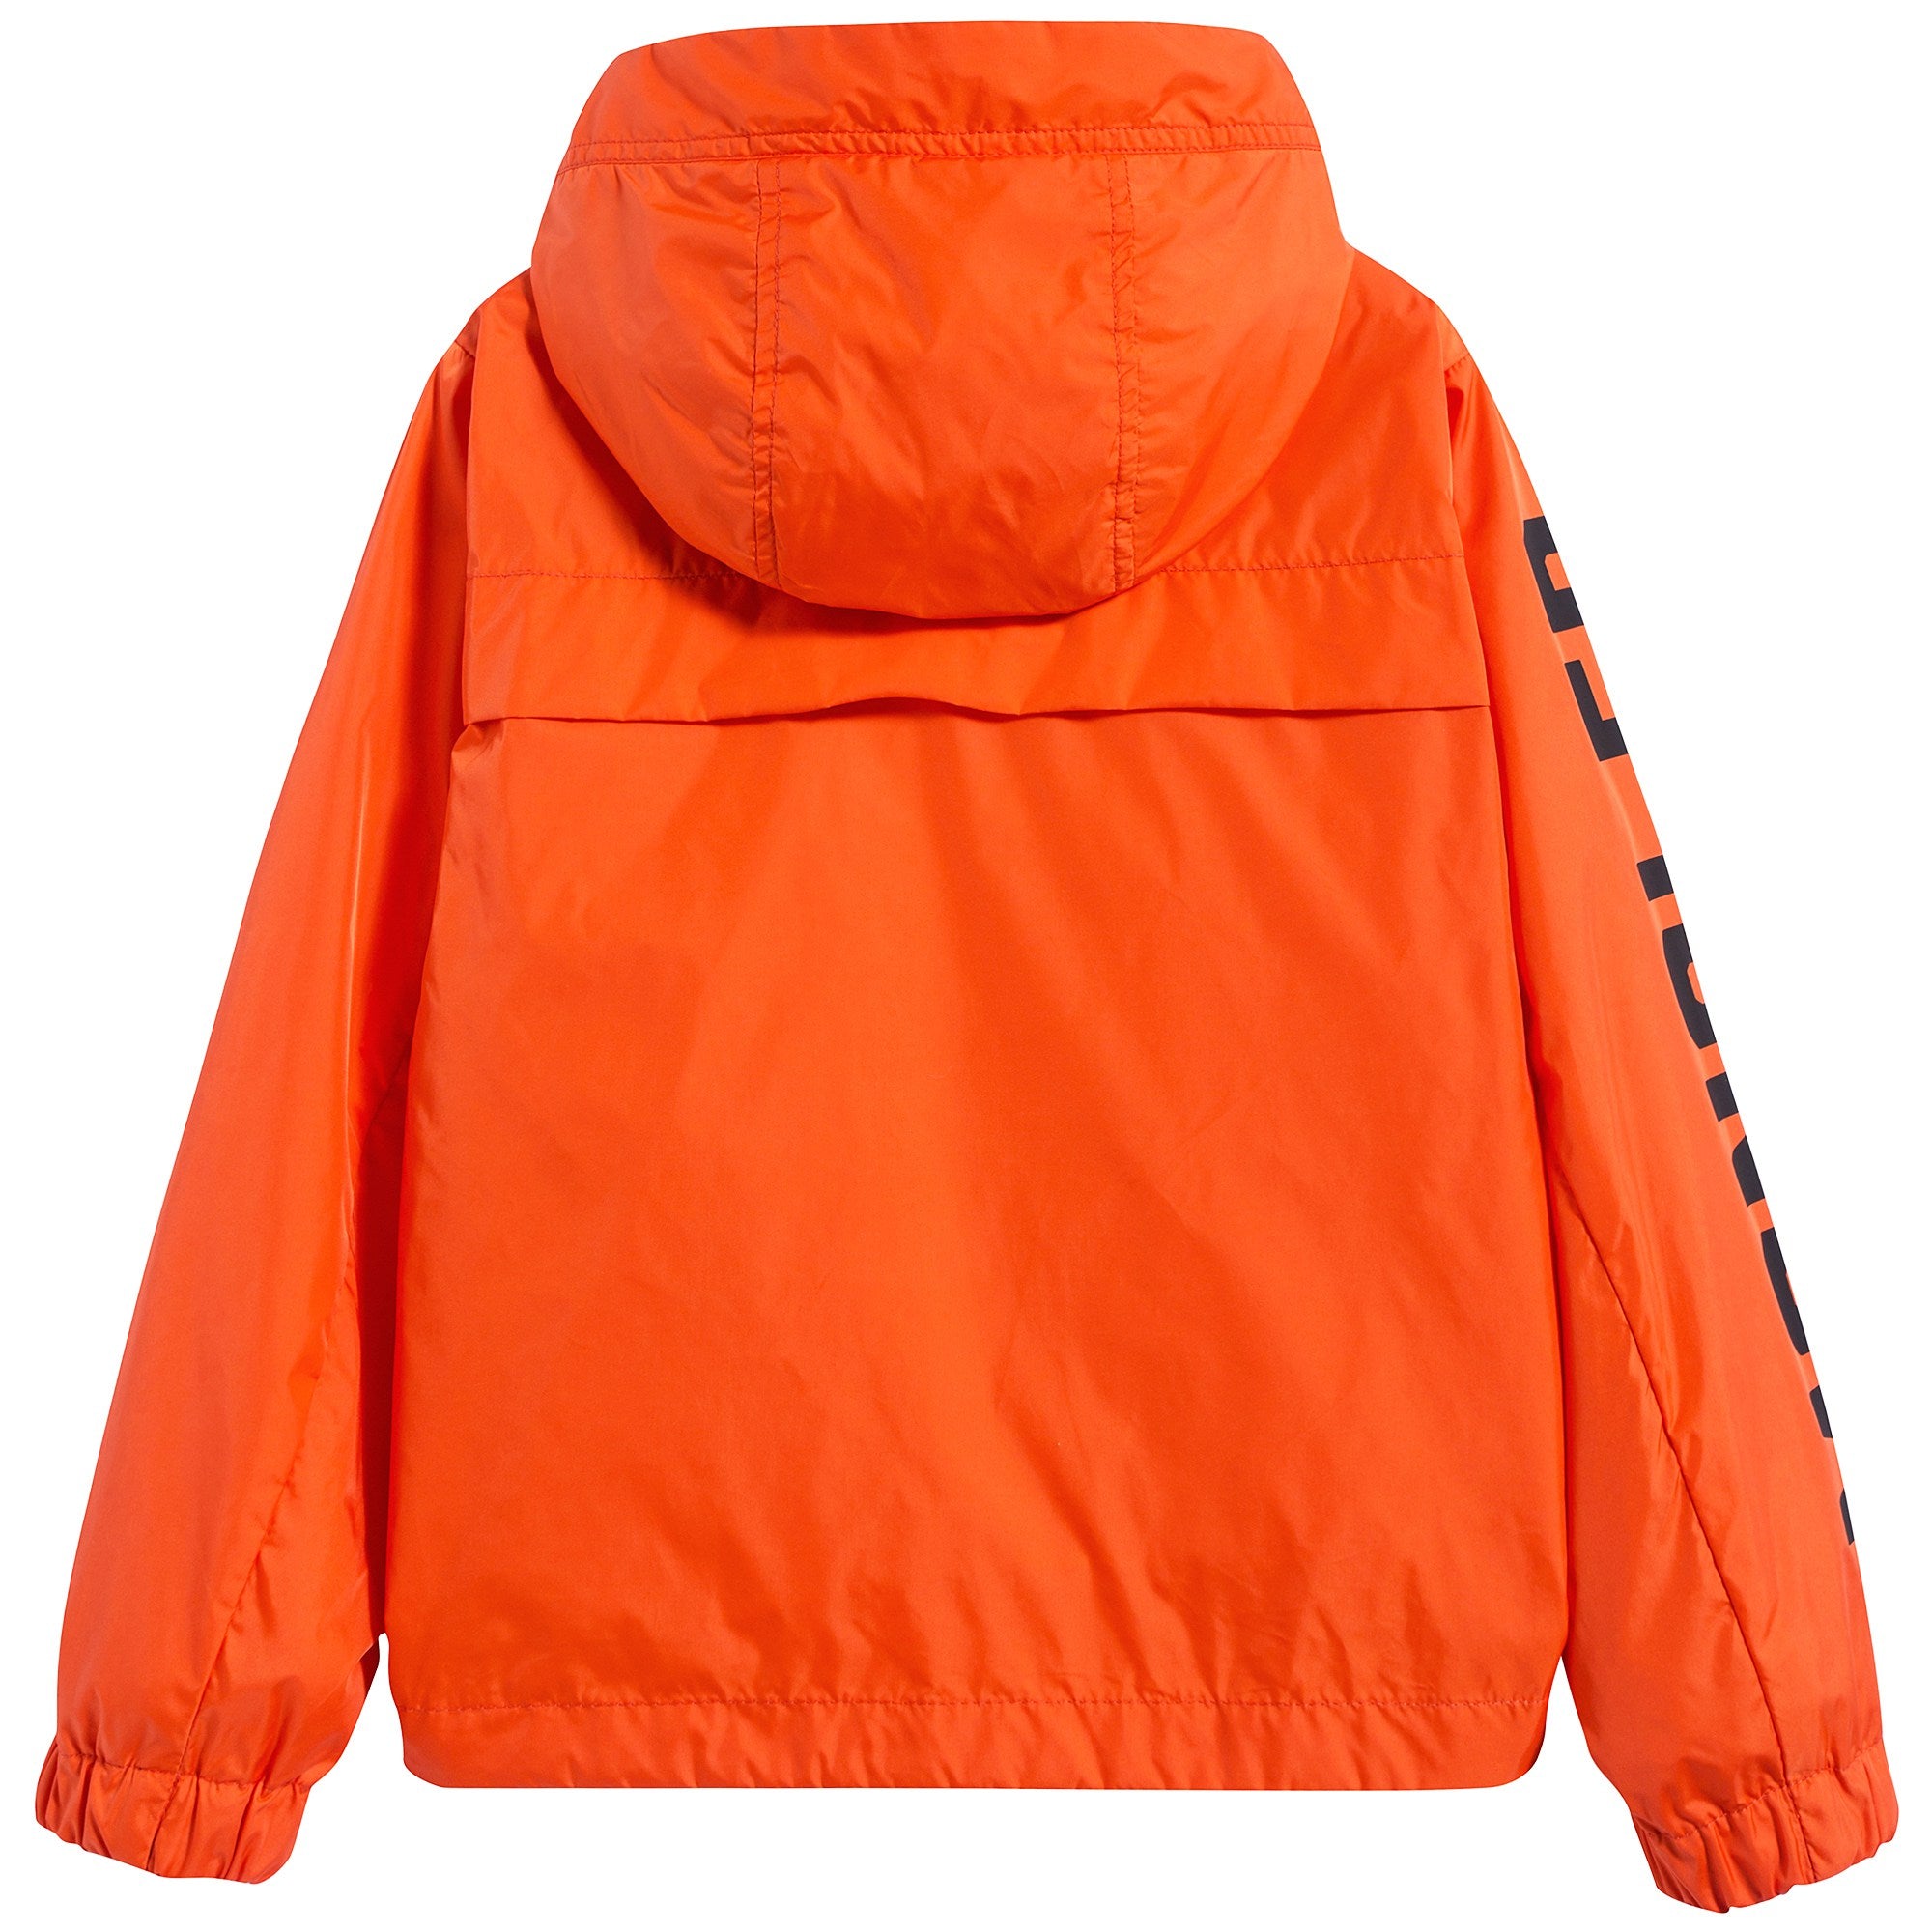 Girls Orange "SAXOPHONE" Jacket